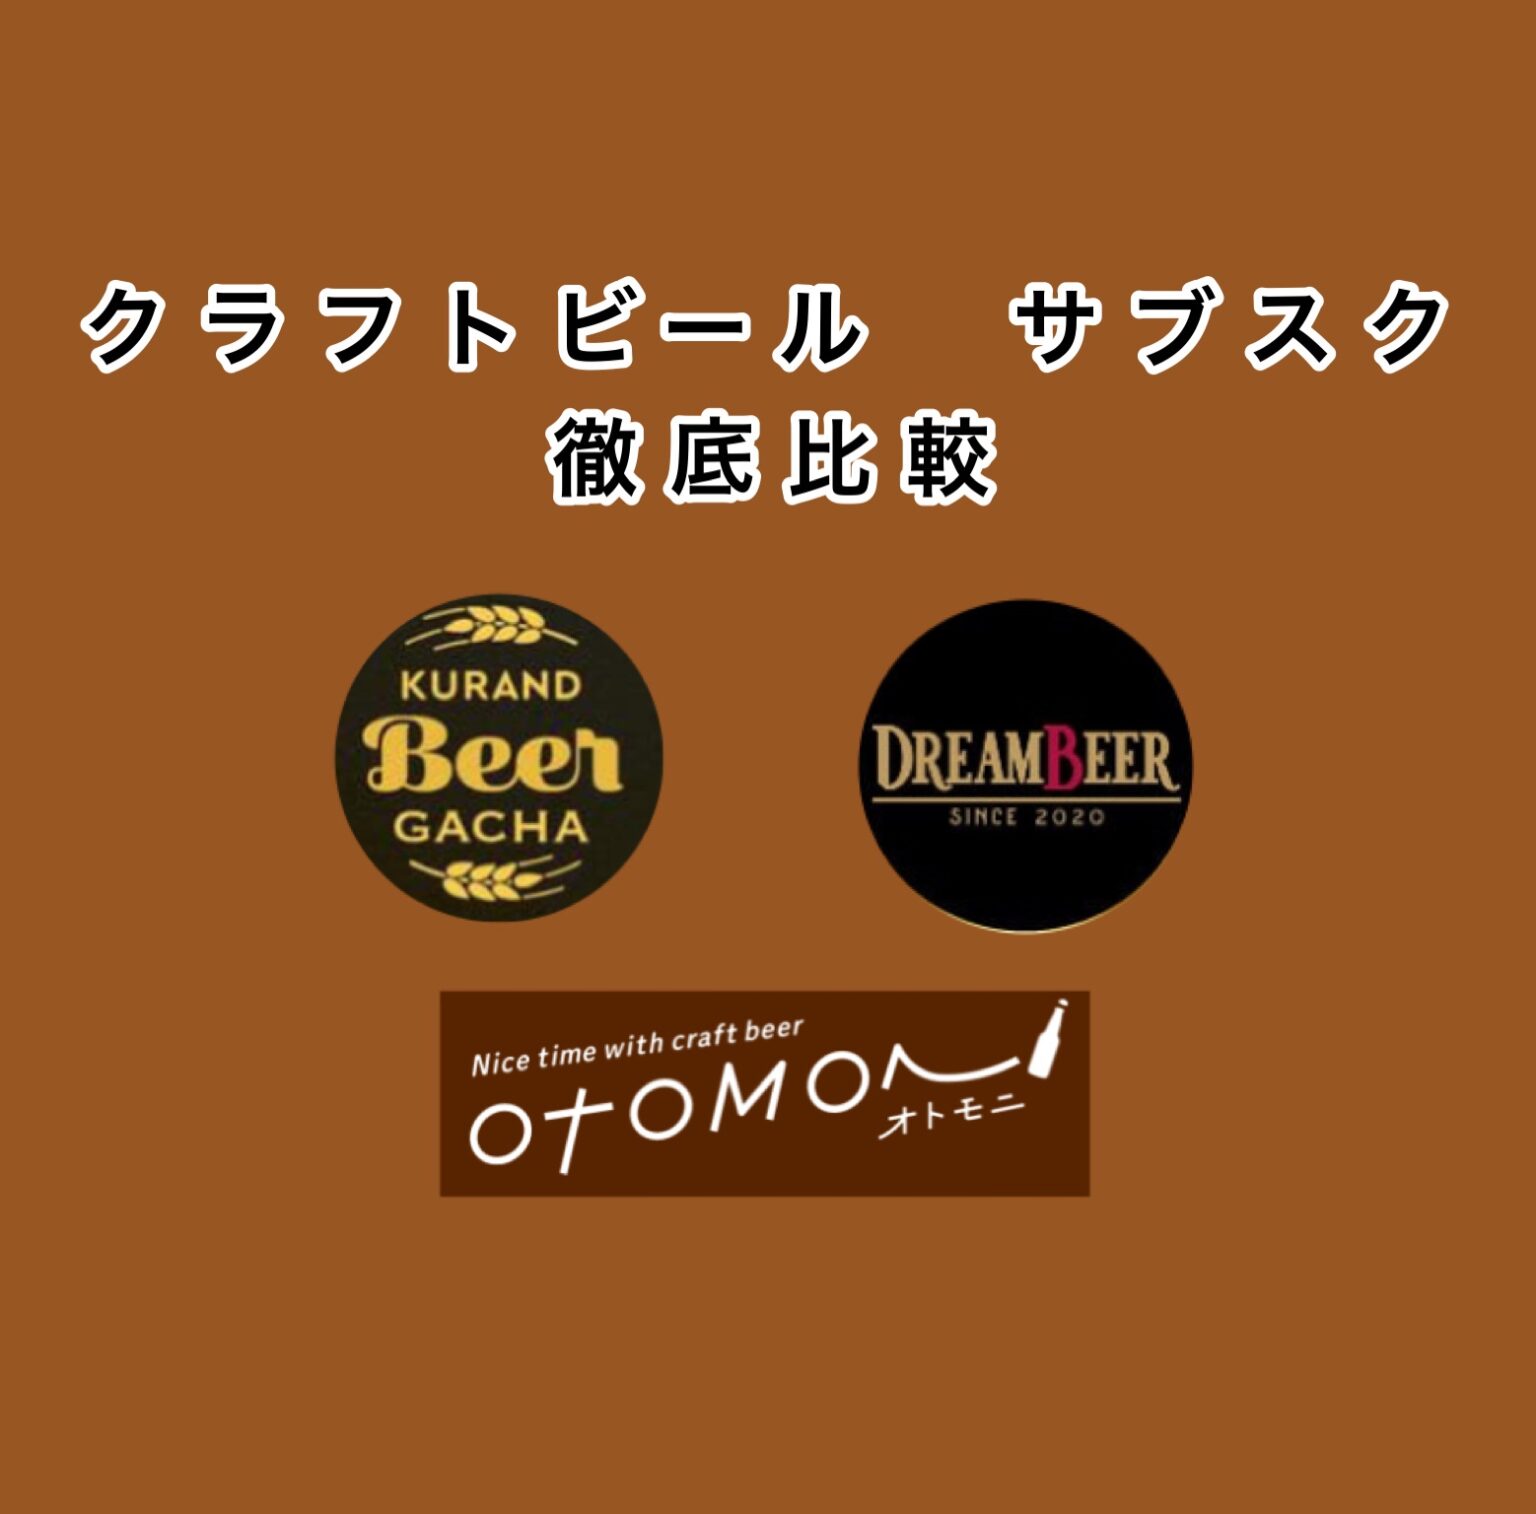 クラフトビールのサブスクおすすめ3社を徹底比較【ドリームビア、オトモニ、酒ガチャ】